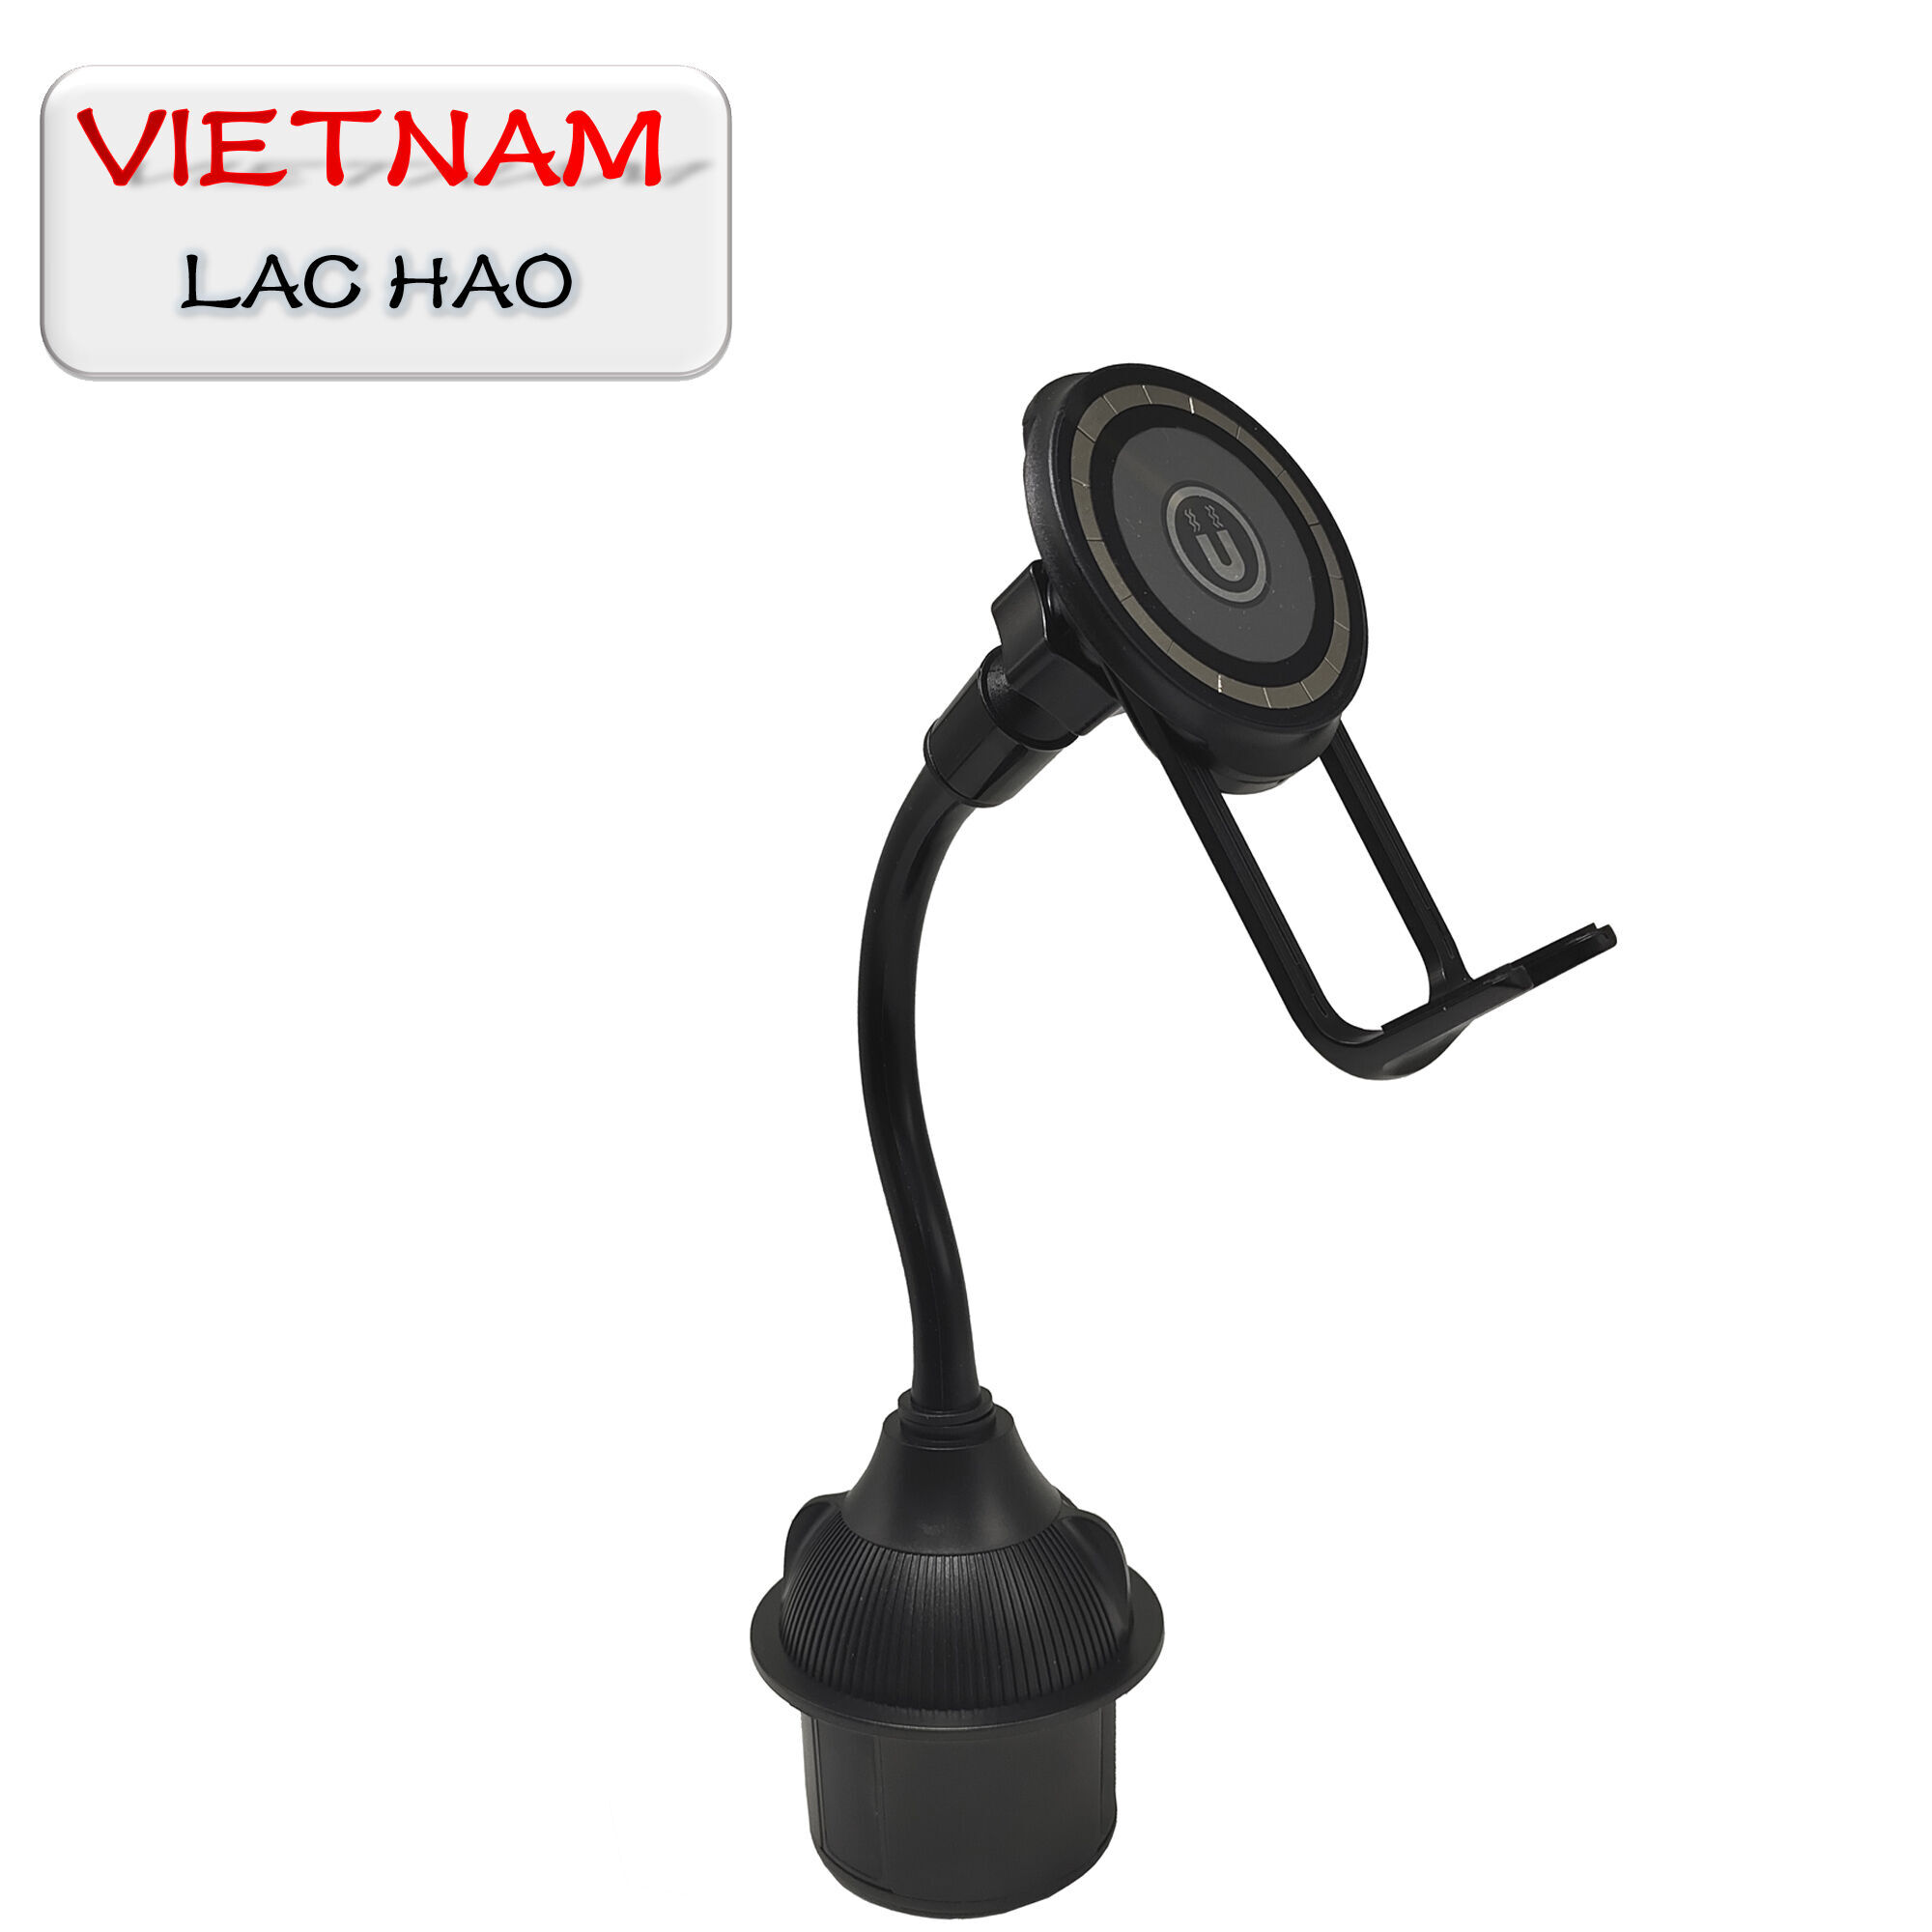 Achetez en gros Viet Nam Vente Chaude Porte-gobelet De Voiture